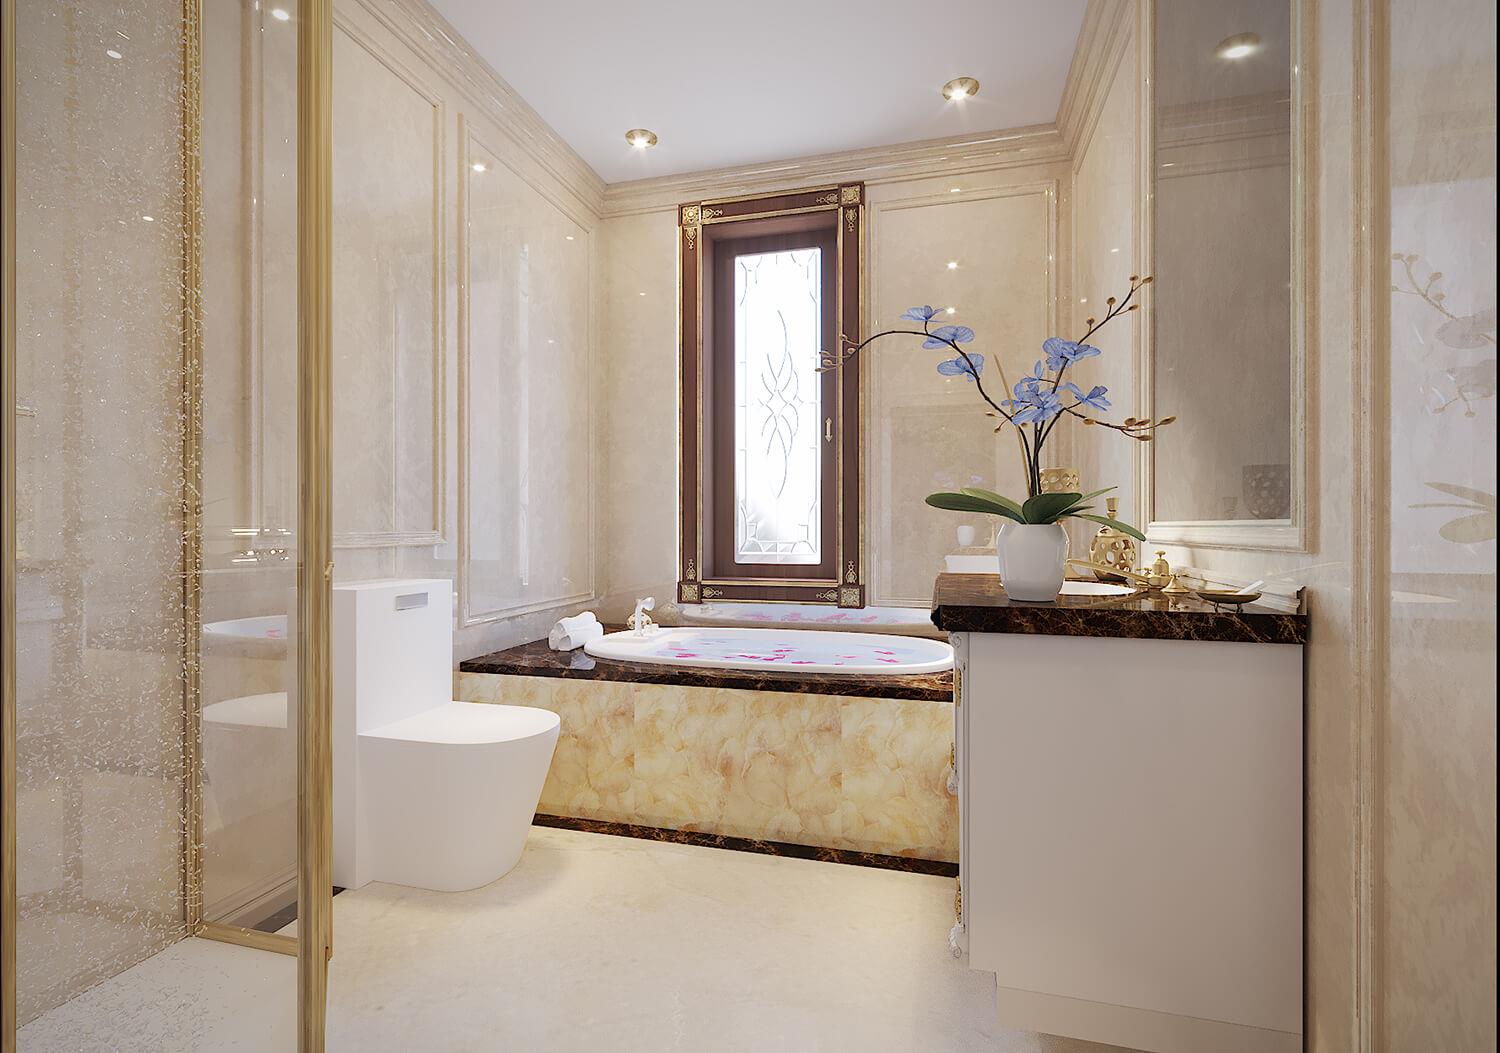 Thiết kế phòng tắm khách sạn phải đảm bảo tính tiện nghi và hiện đại để đáp ứng nhu cầu của khách hàng, từ đó mang lại sự hài lòng và đánh giá cao cho nơi lưu trú của bạn.